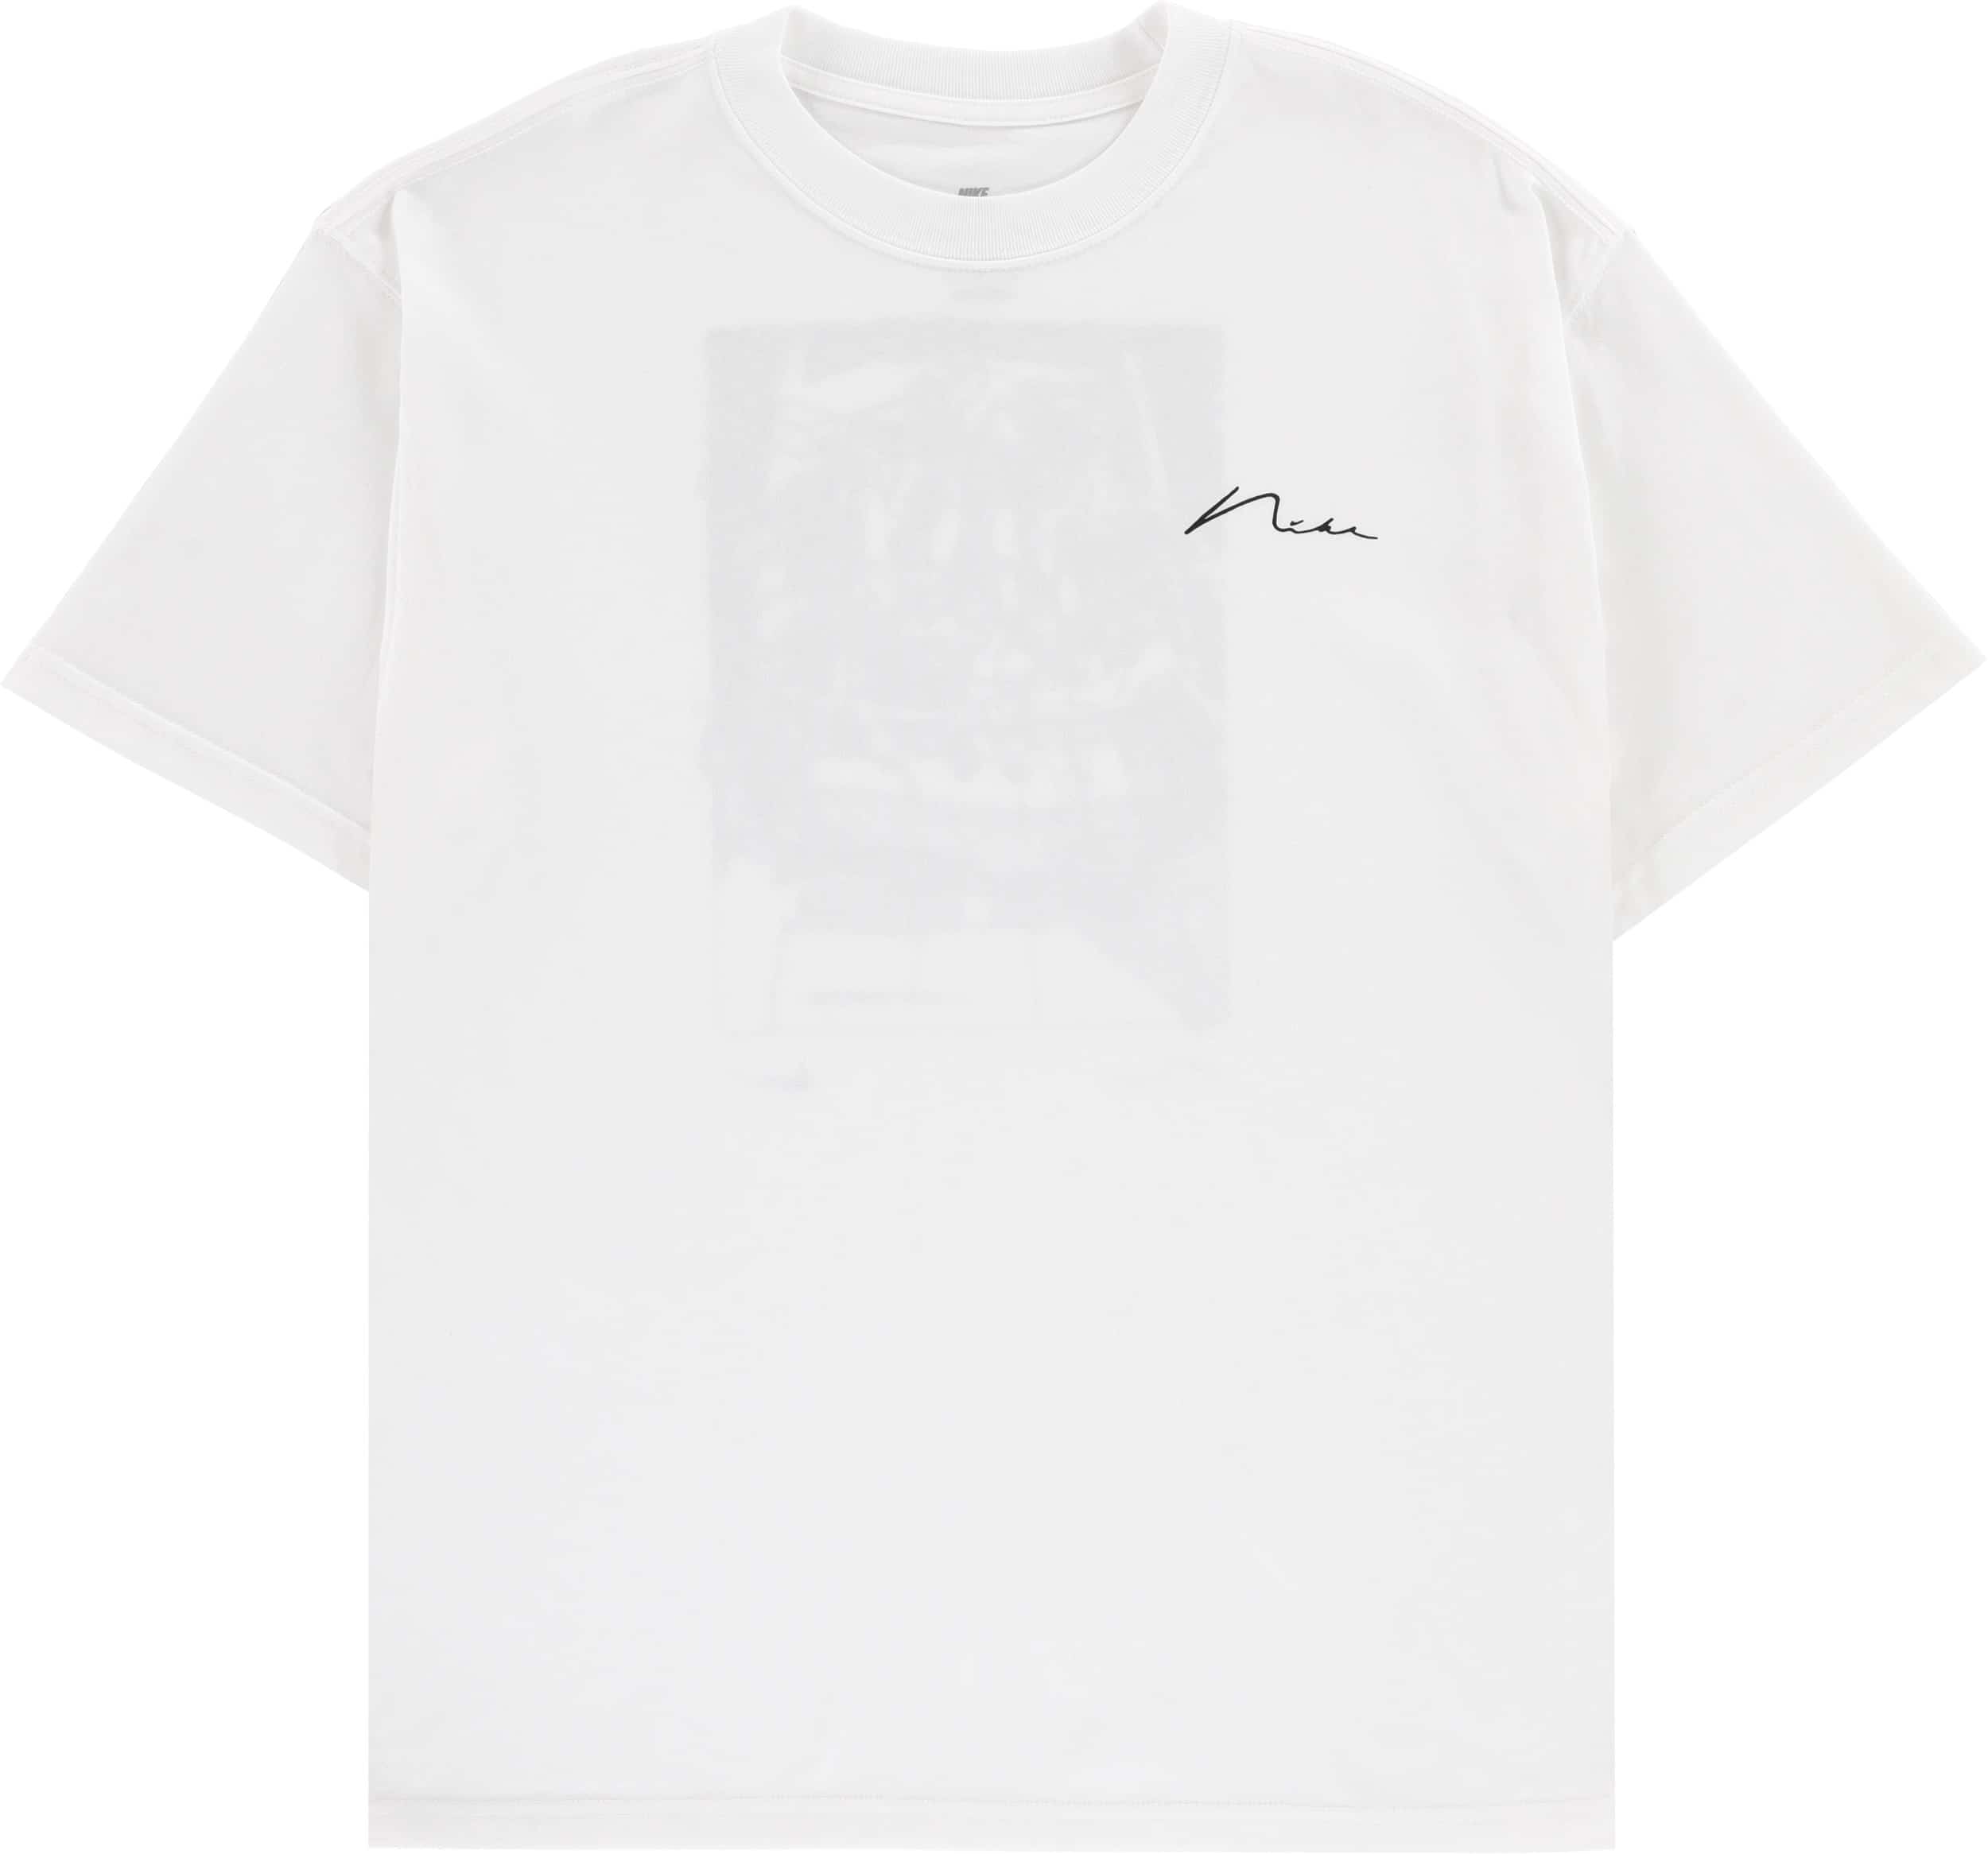 Nike SB Dunk T-Shirt - white | Tactics